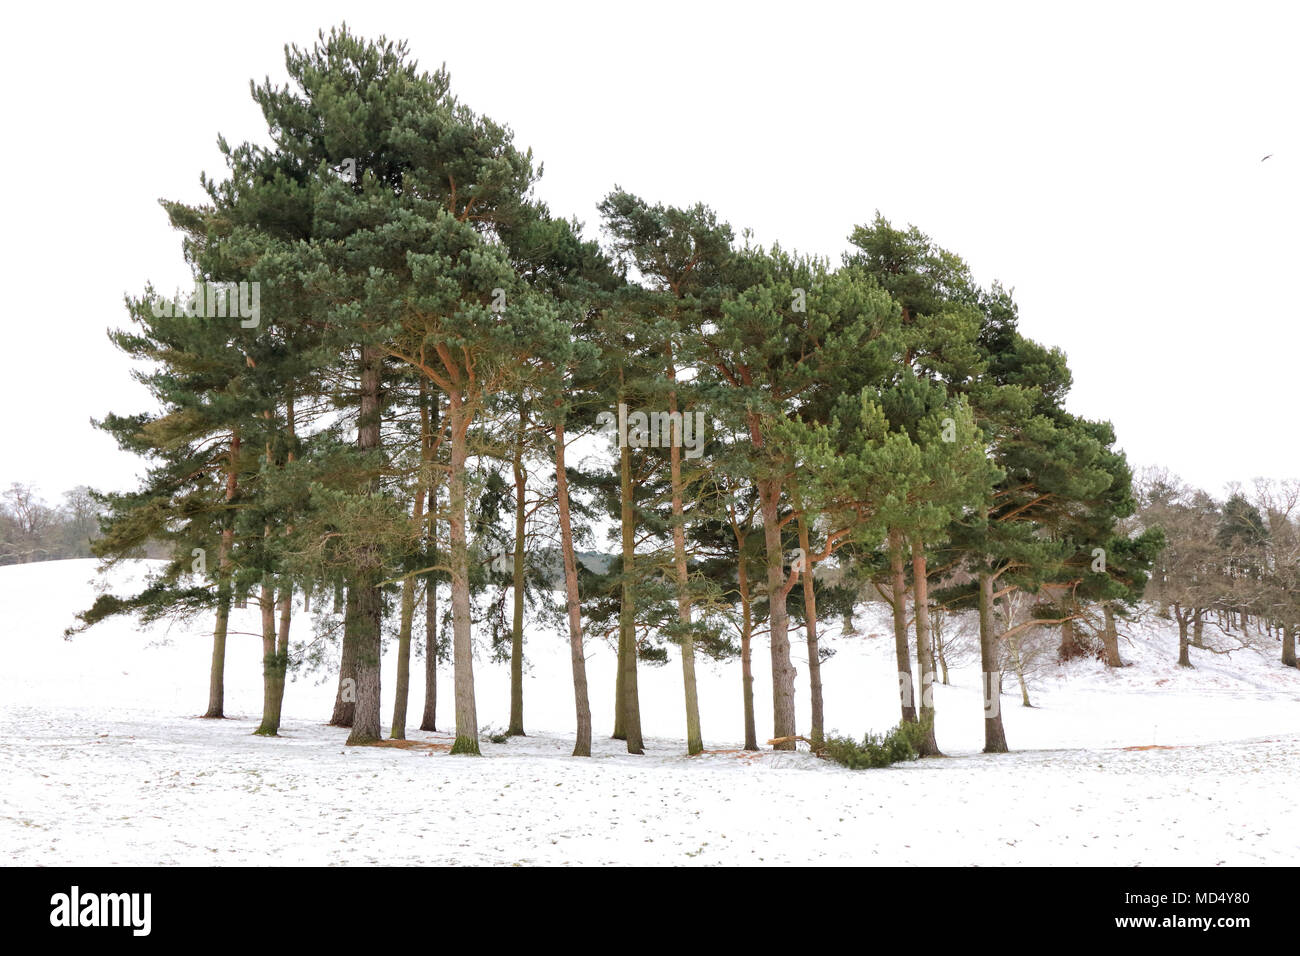 Ampthill Park se transforme en une féerie d'hiver sous la couche de neige la nuit. Ampthill, Bedfordshire, Royaume-Uni comprend : vue, l'atmosphère, la neige Où : Ampthill, Royaume-Uni Quand : 18 mars 2018 Source : WENN.com Banque D'Images